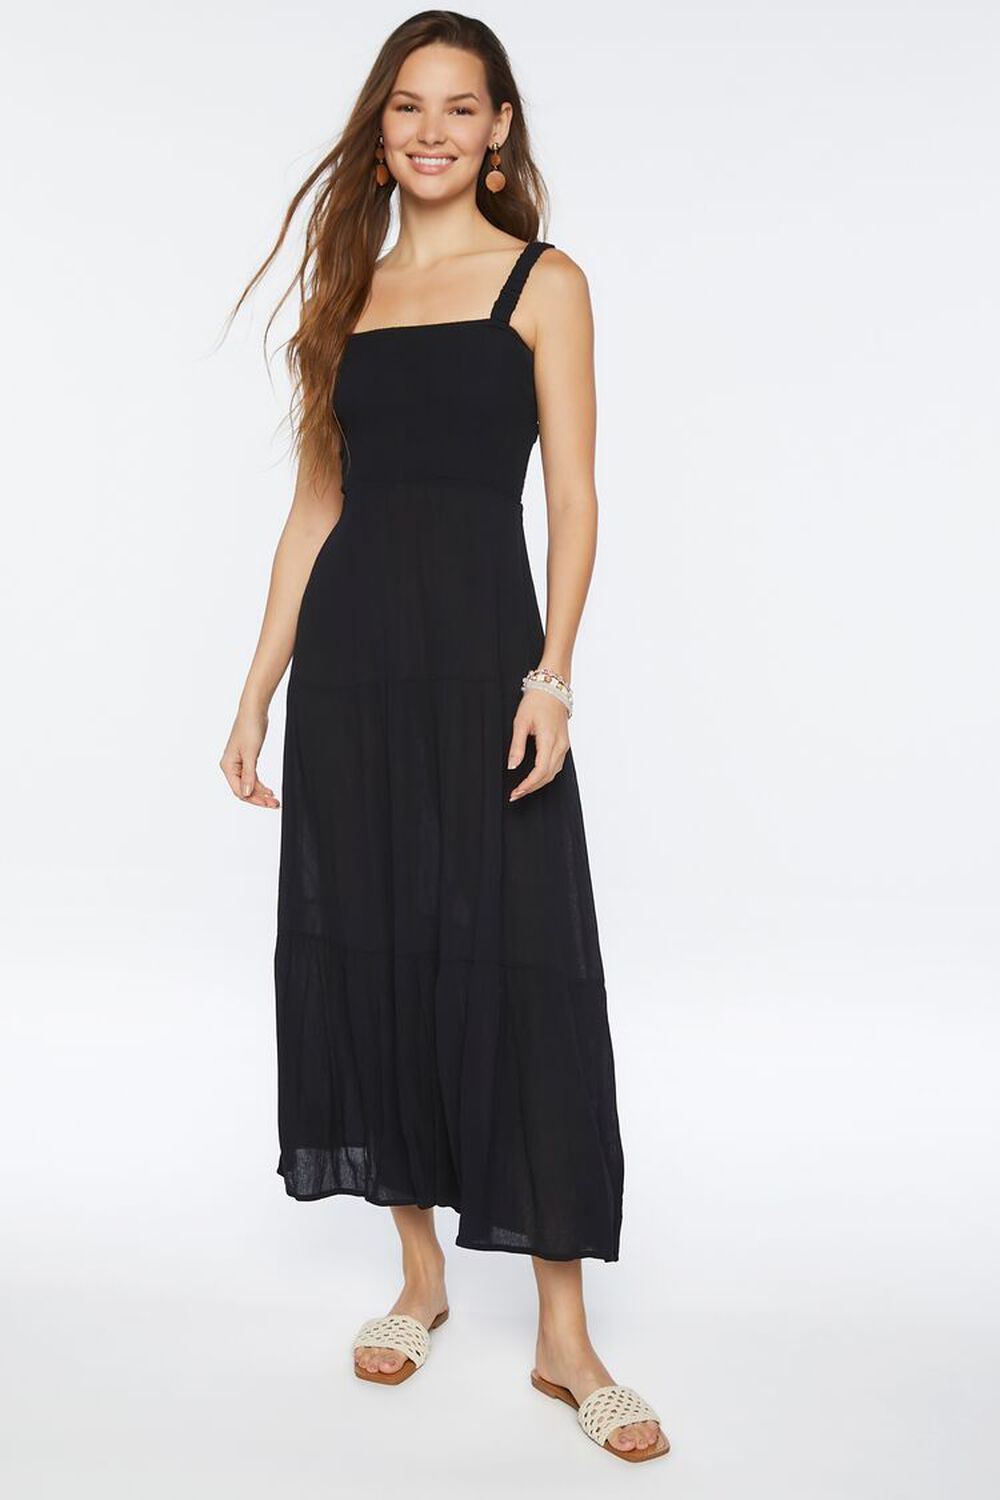 BLACK Smocked Strappy Midi Dress, image 1